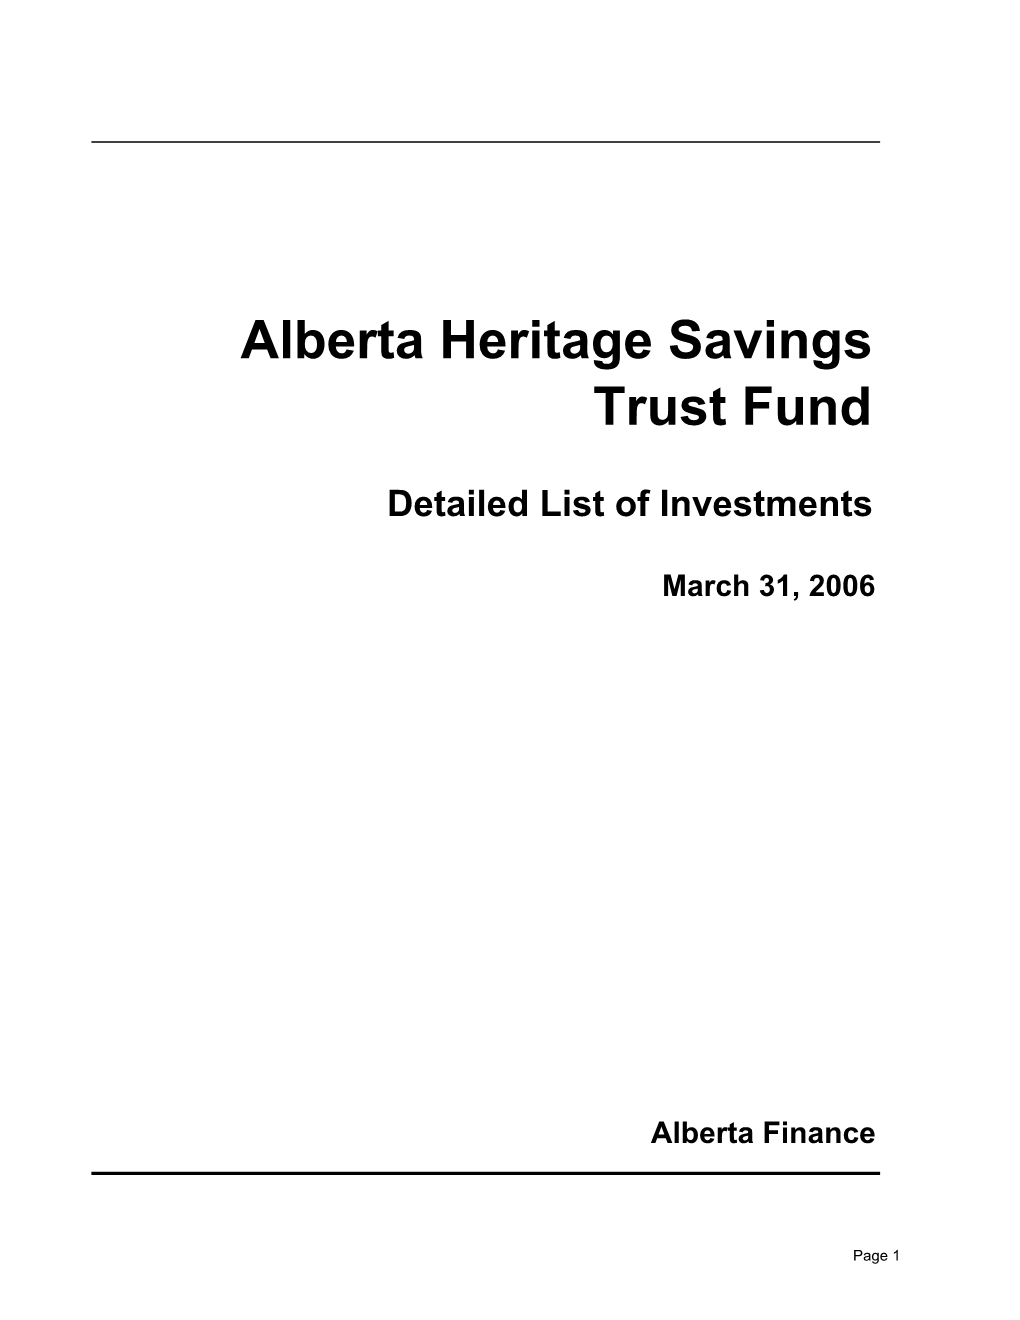 Alberta Heritage Savings Trust Fund